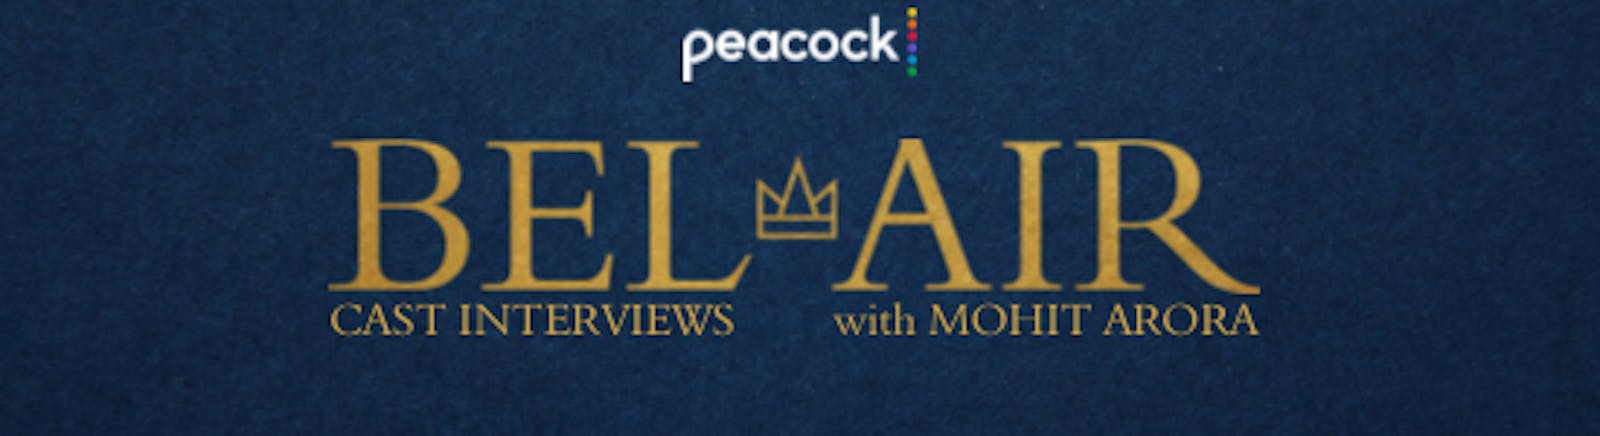 PEACOCK |  BEL-AIR CAST INTERVIEWS